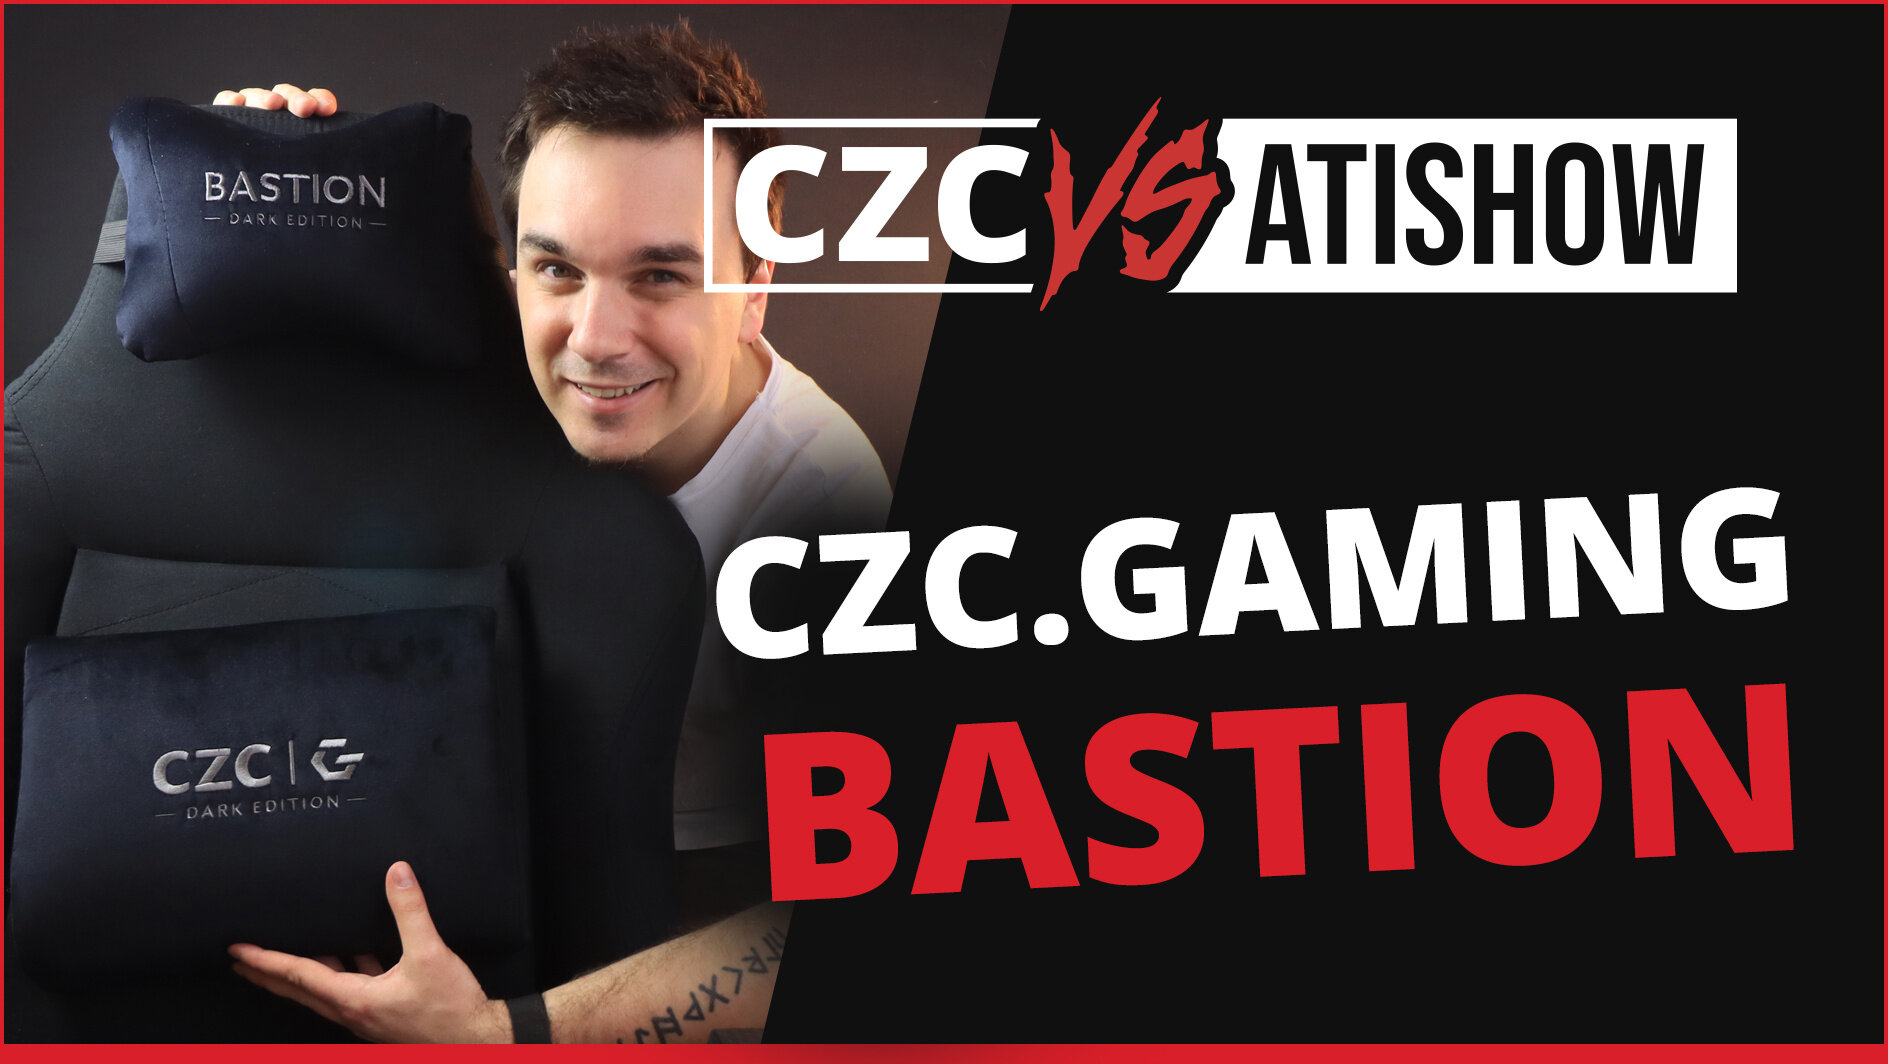 Potahy, co nikdy nelepí - CZC.Gaming Bastion | CZC vs AtiShow #42